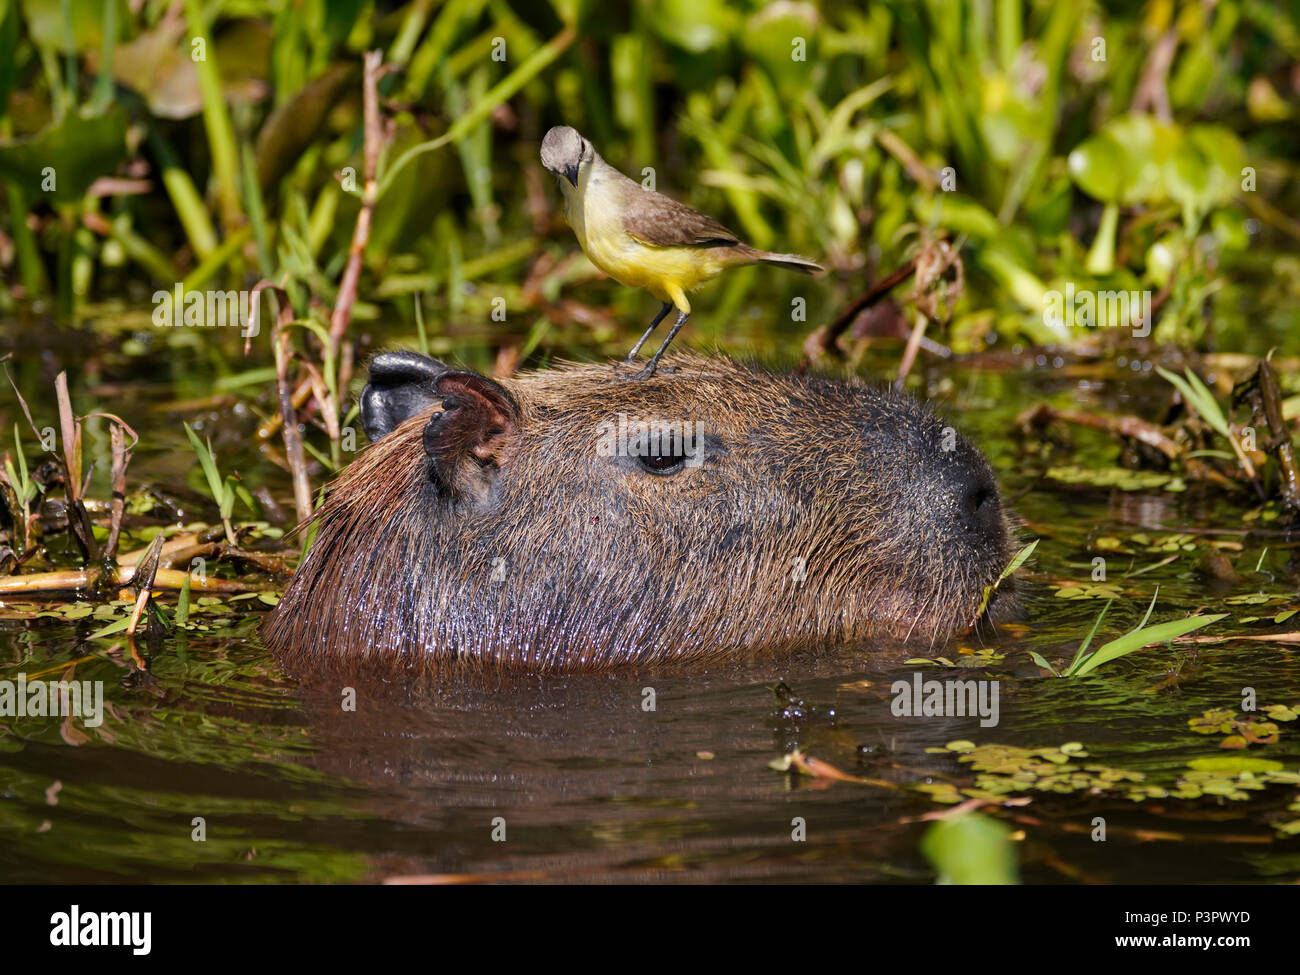 Cattle Tyrant (Machetornis rixosa) on Capybara (Hydrochoerus hydrochaeris), Pantanal, Brazil Stock Photo